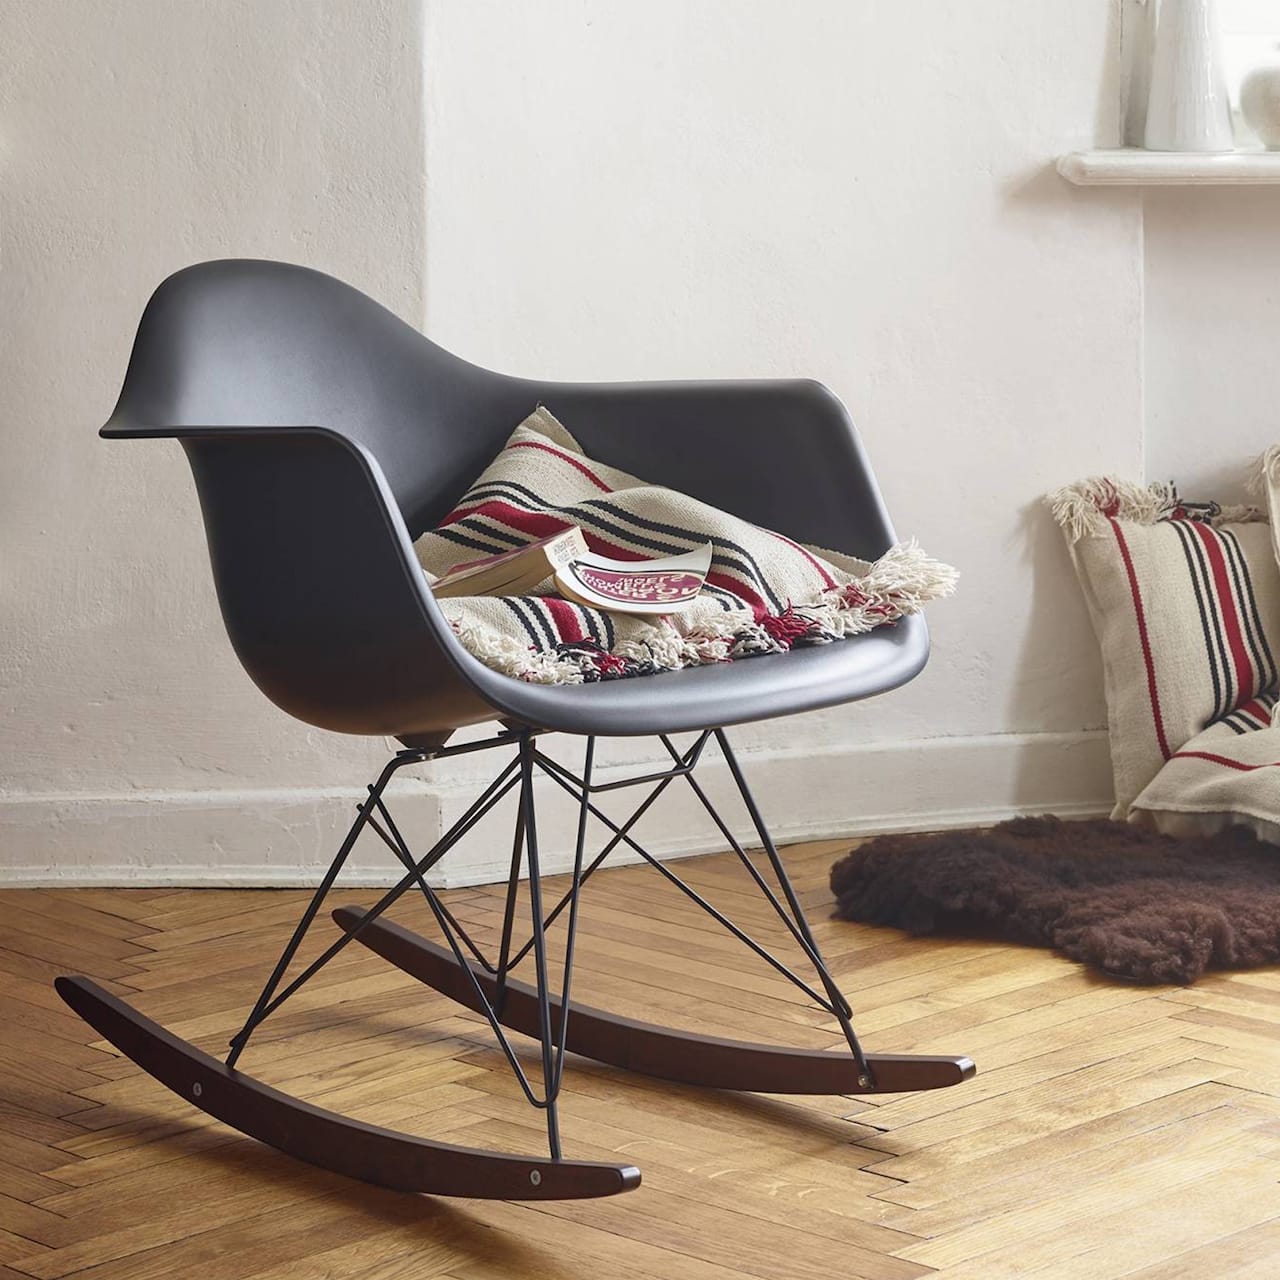 Eames Plastic Chair - RAR